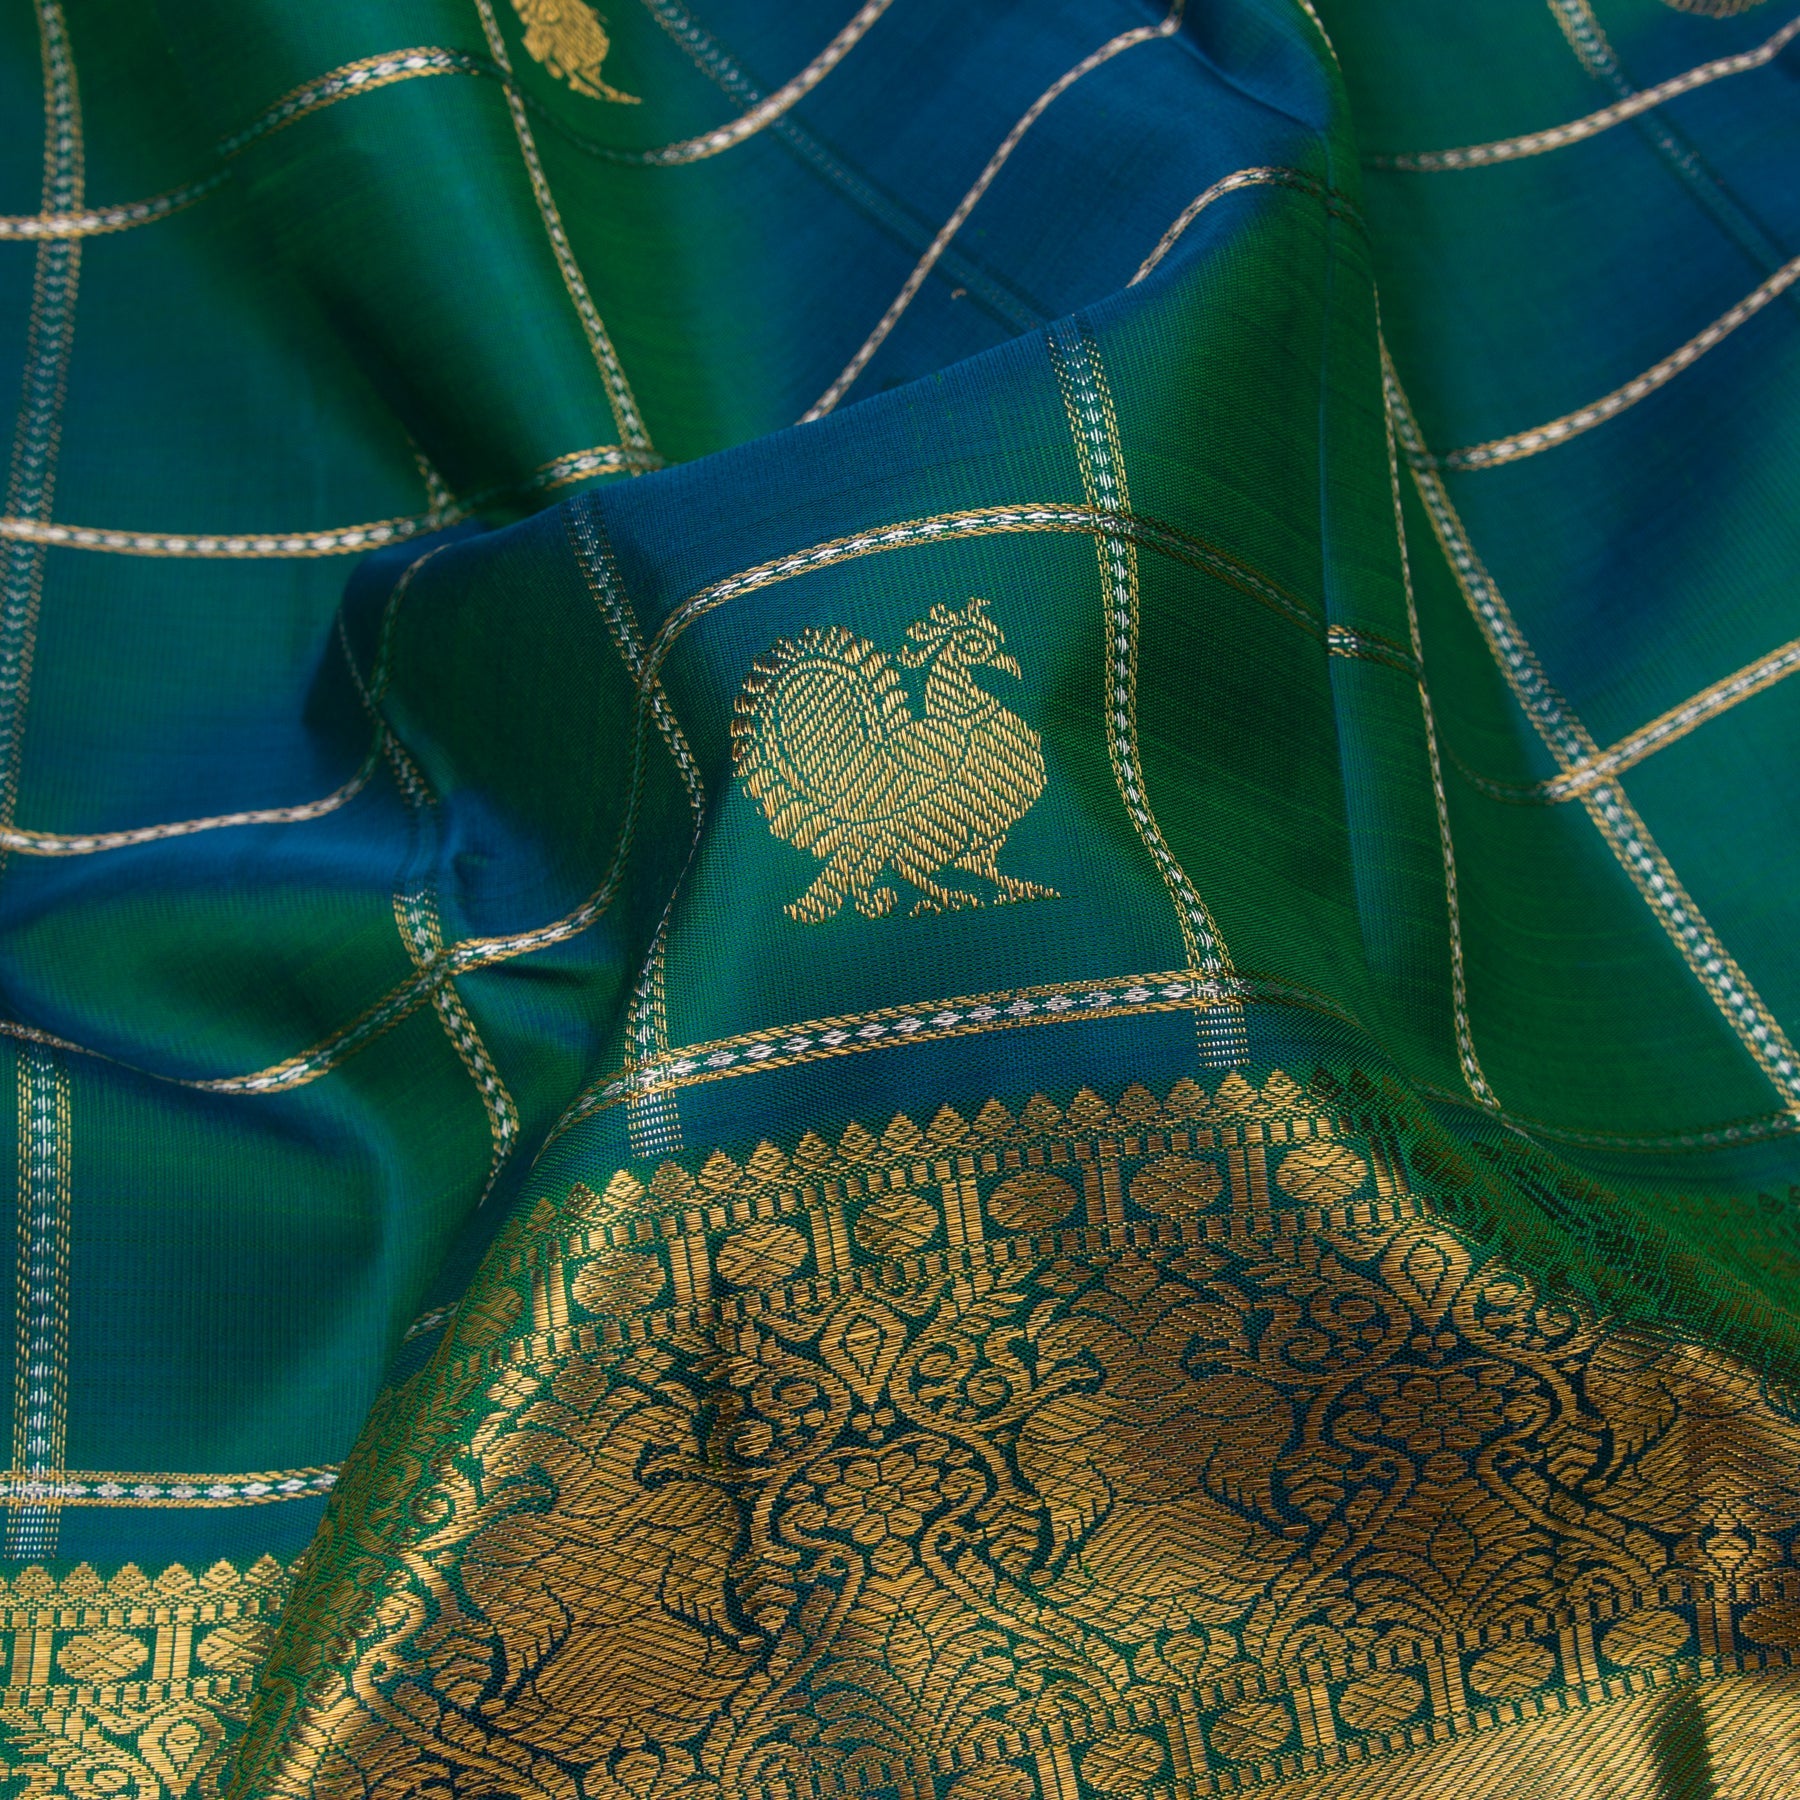 Kanakavalli Kanjivaram Silk Sari 23-599-HS001-11310 - Fabric View